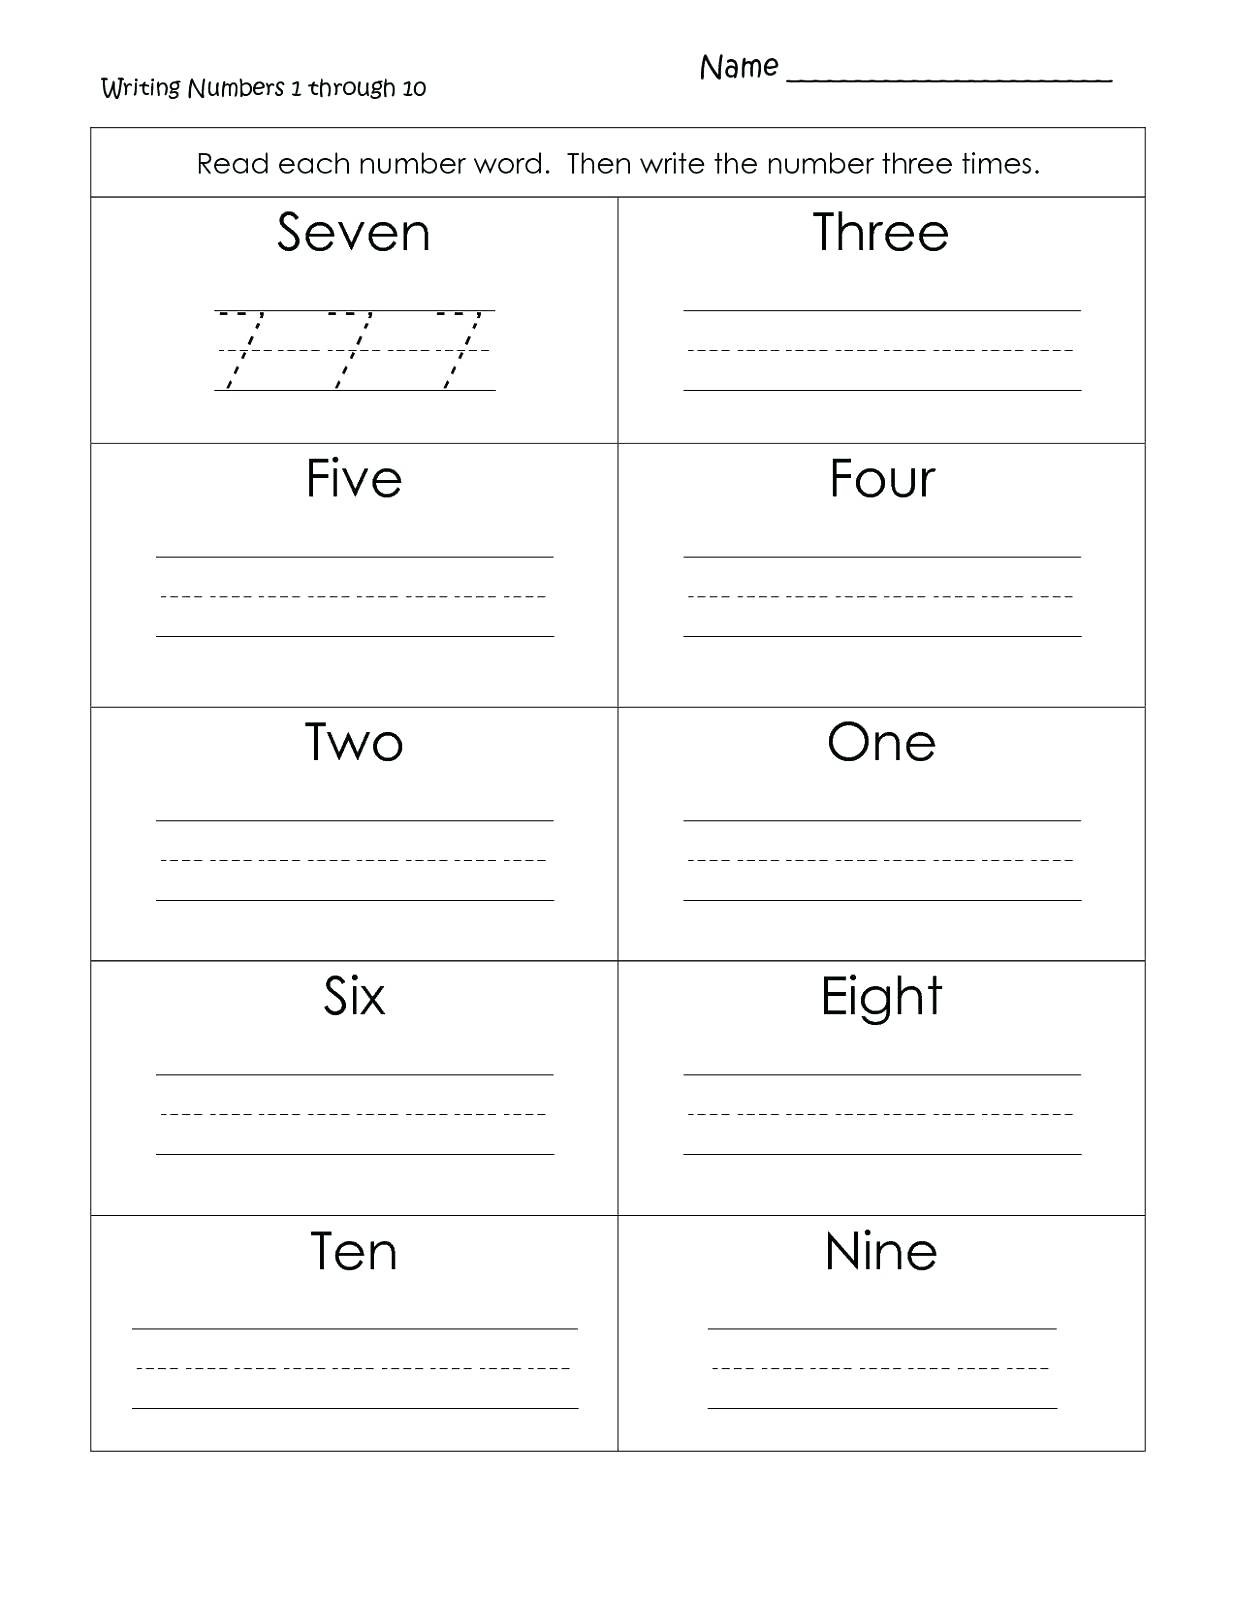 Number Lines Worksheets 3rd Grade 3rd Grade Number Line Number Line Math Worksheets Grade